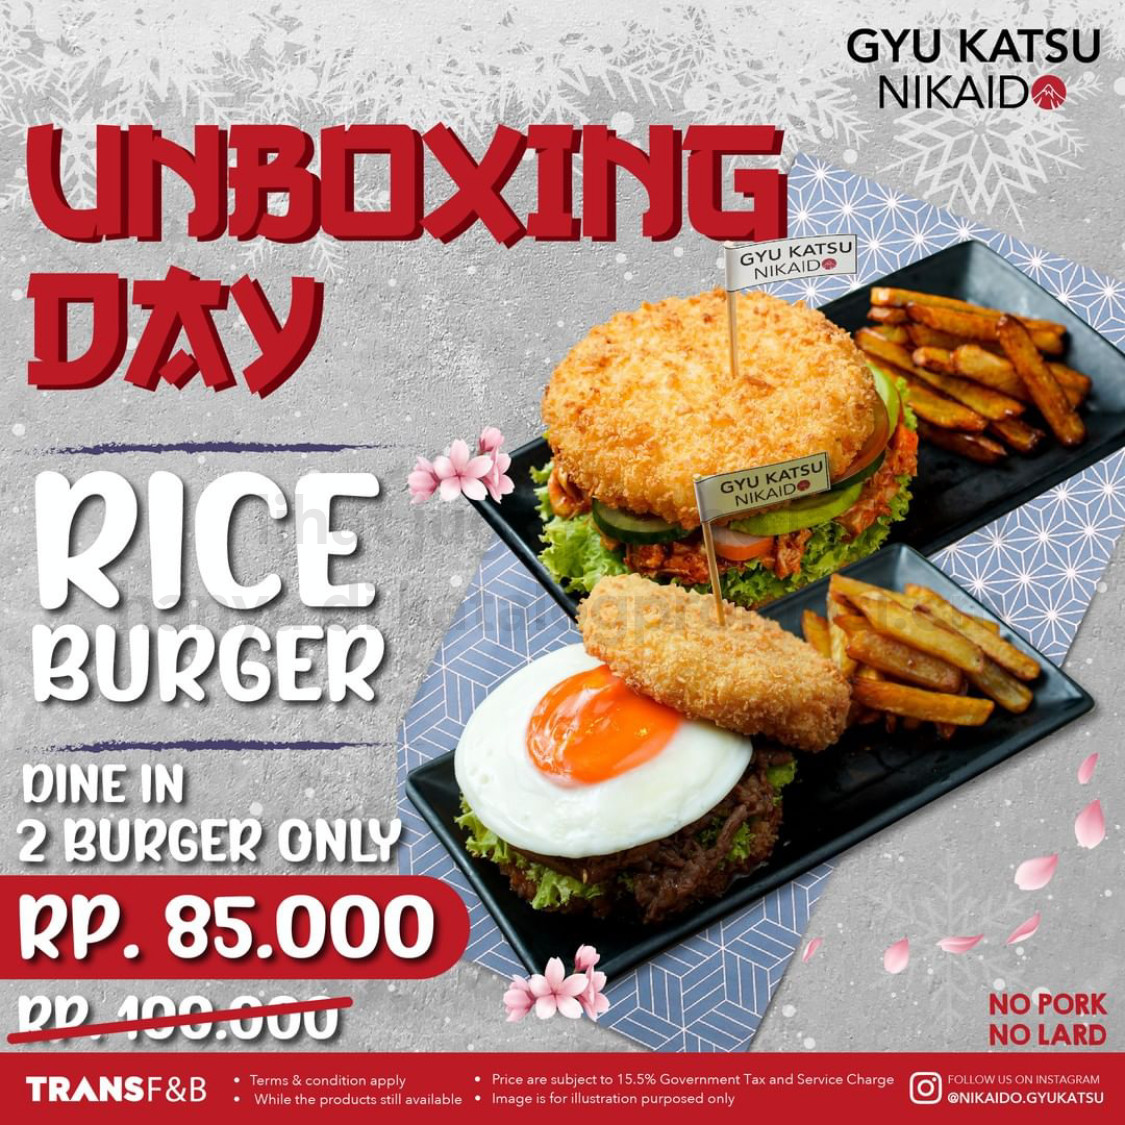 Promo Gyu Katsu Nikaido Unboxing Day - Harga Spesial 2 varian Rice Burger mulai dari Rp 85.000